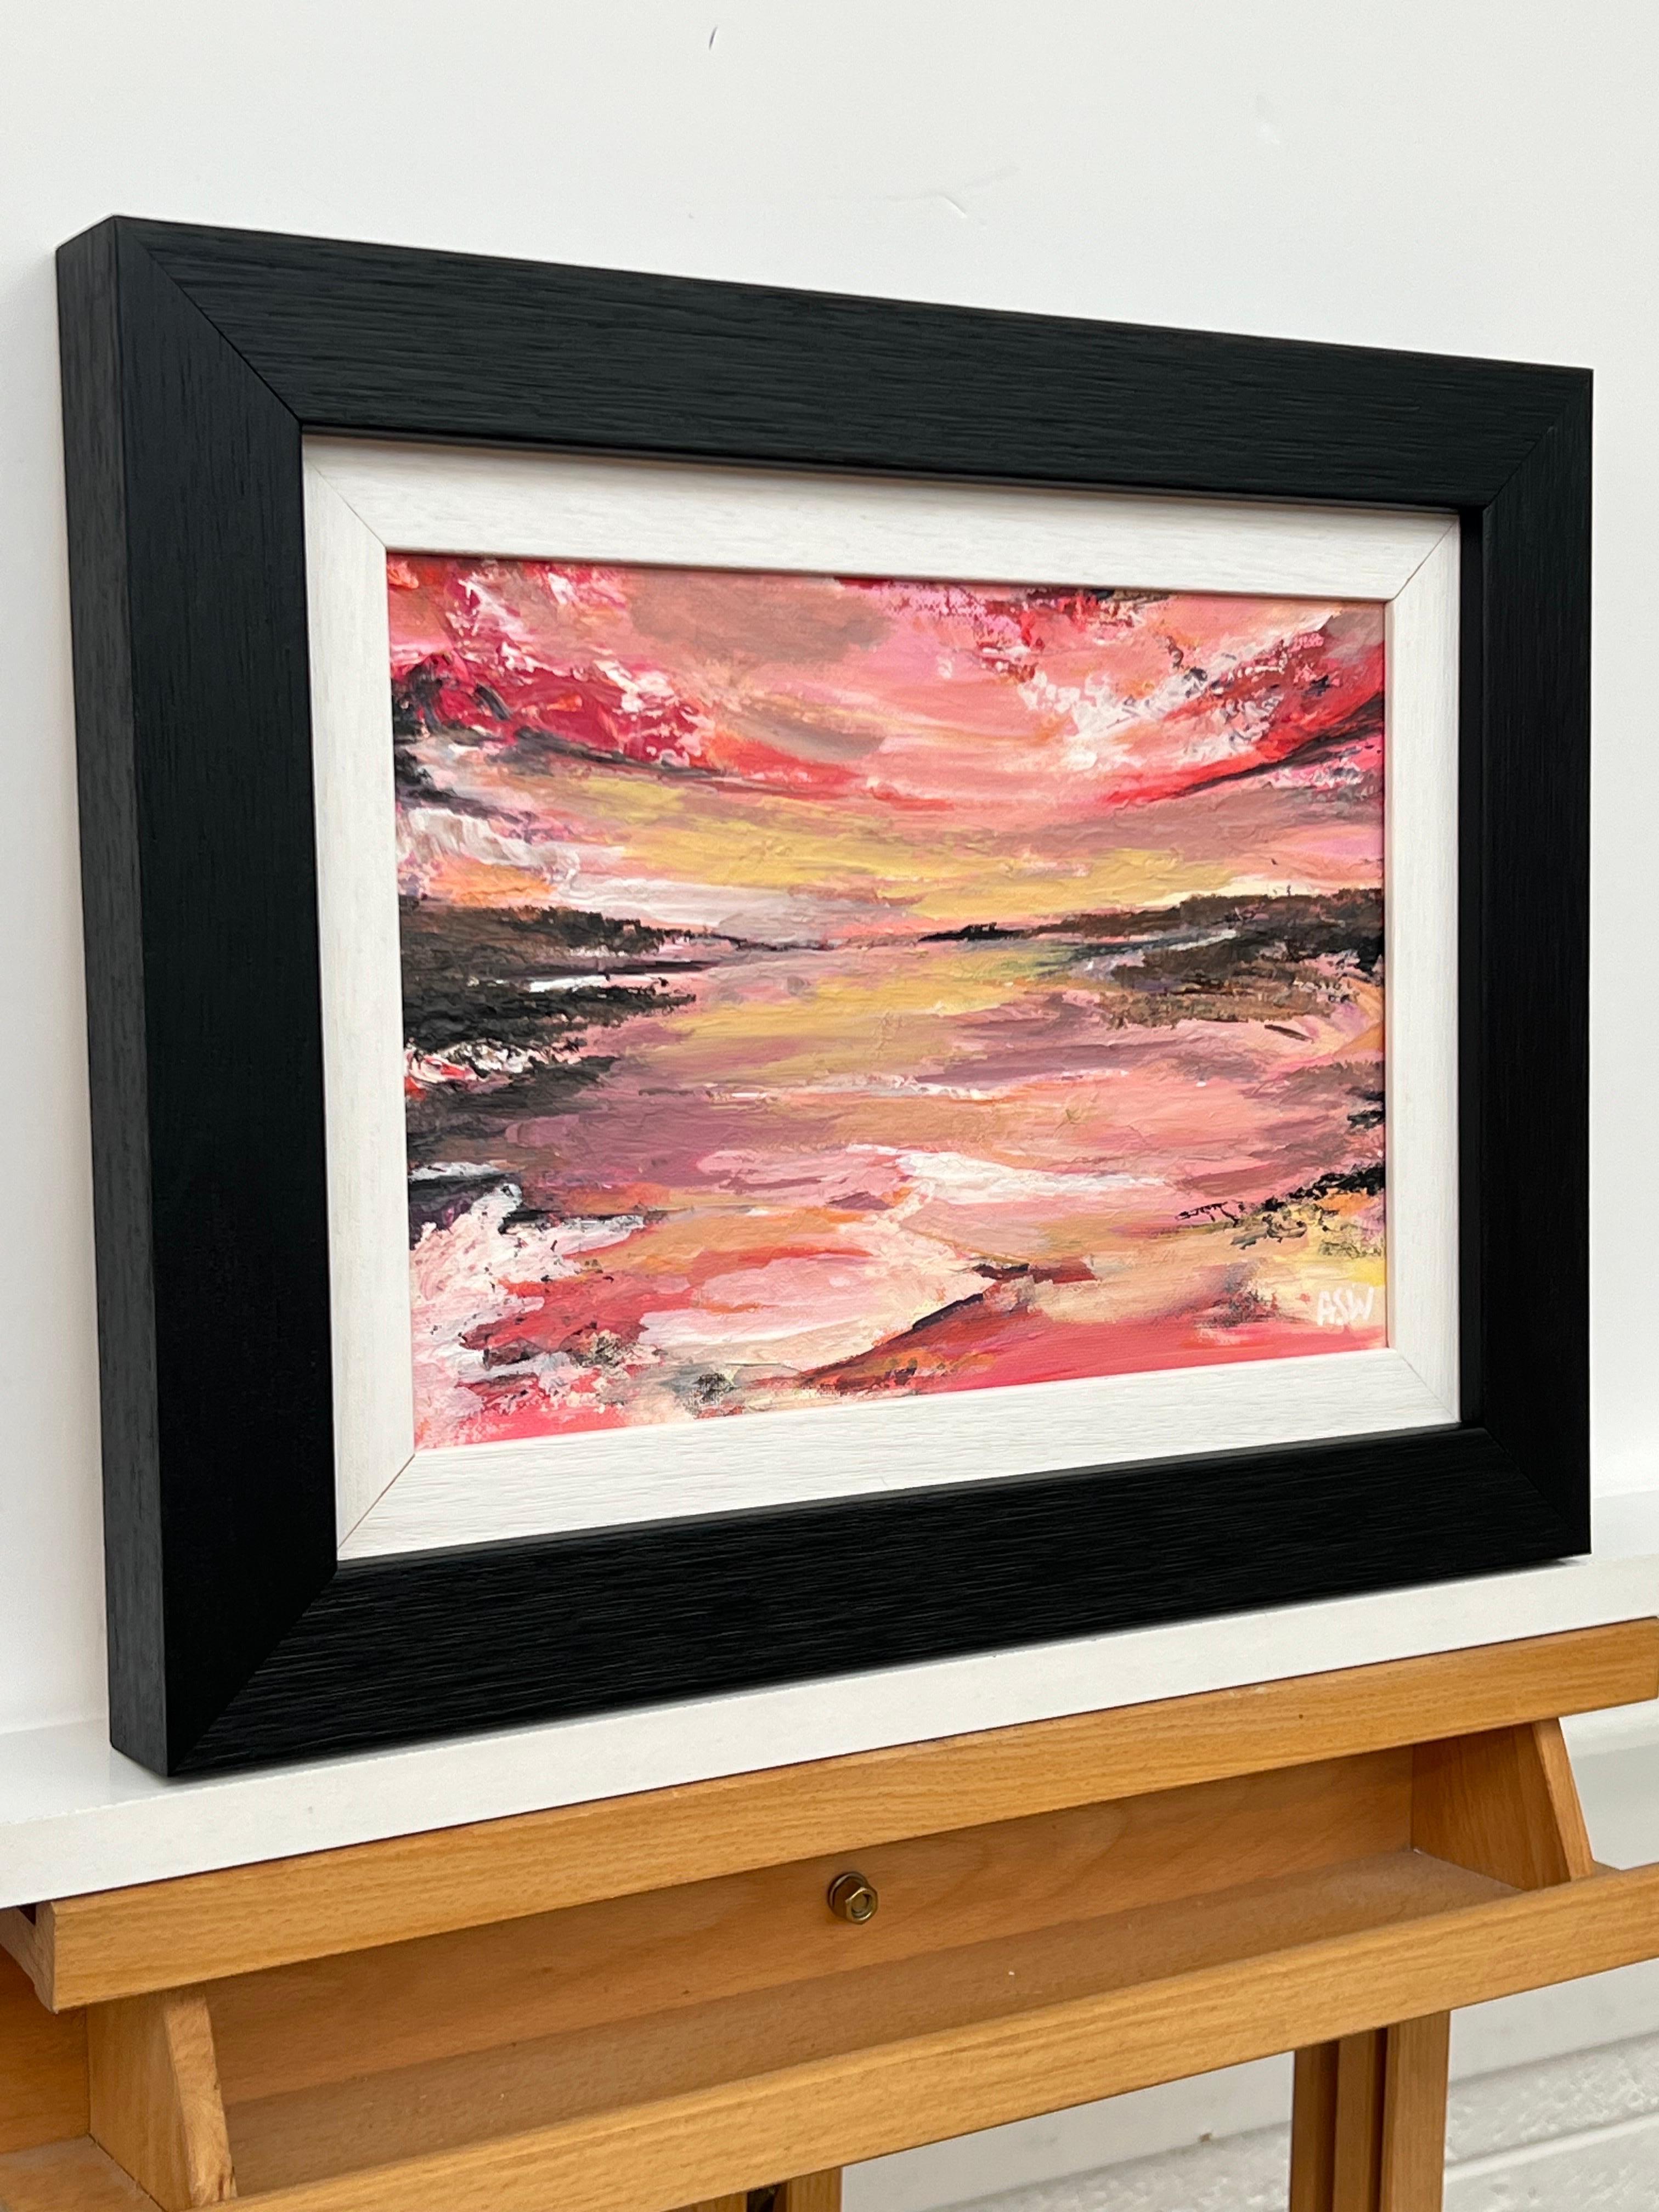 Impasto Abstract Landscape Seascape Painting with Pink Red Black & Golden Yellow by British Contemporary Artist, Angela Wakefield

L'œuvre d'art mesure 12 x 8 pouces
Le cadre mesure 17 x 13 pouces

Cette peinture représente un coucher de soleil